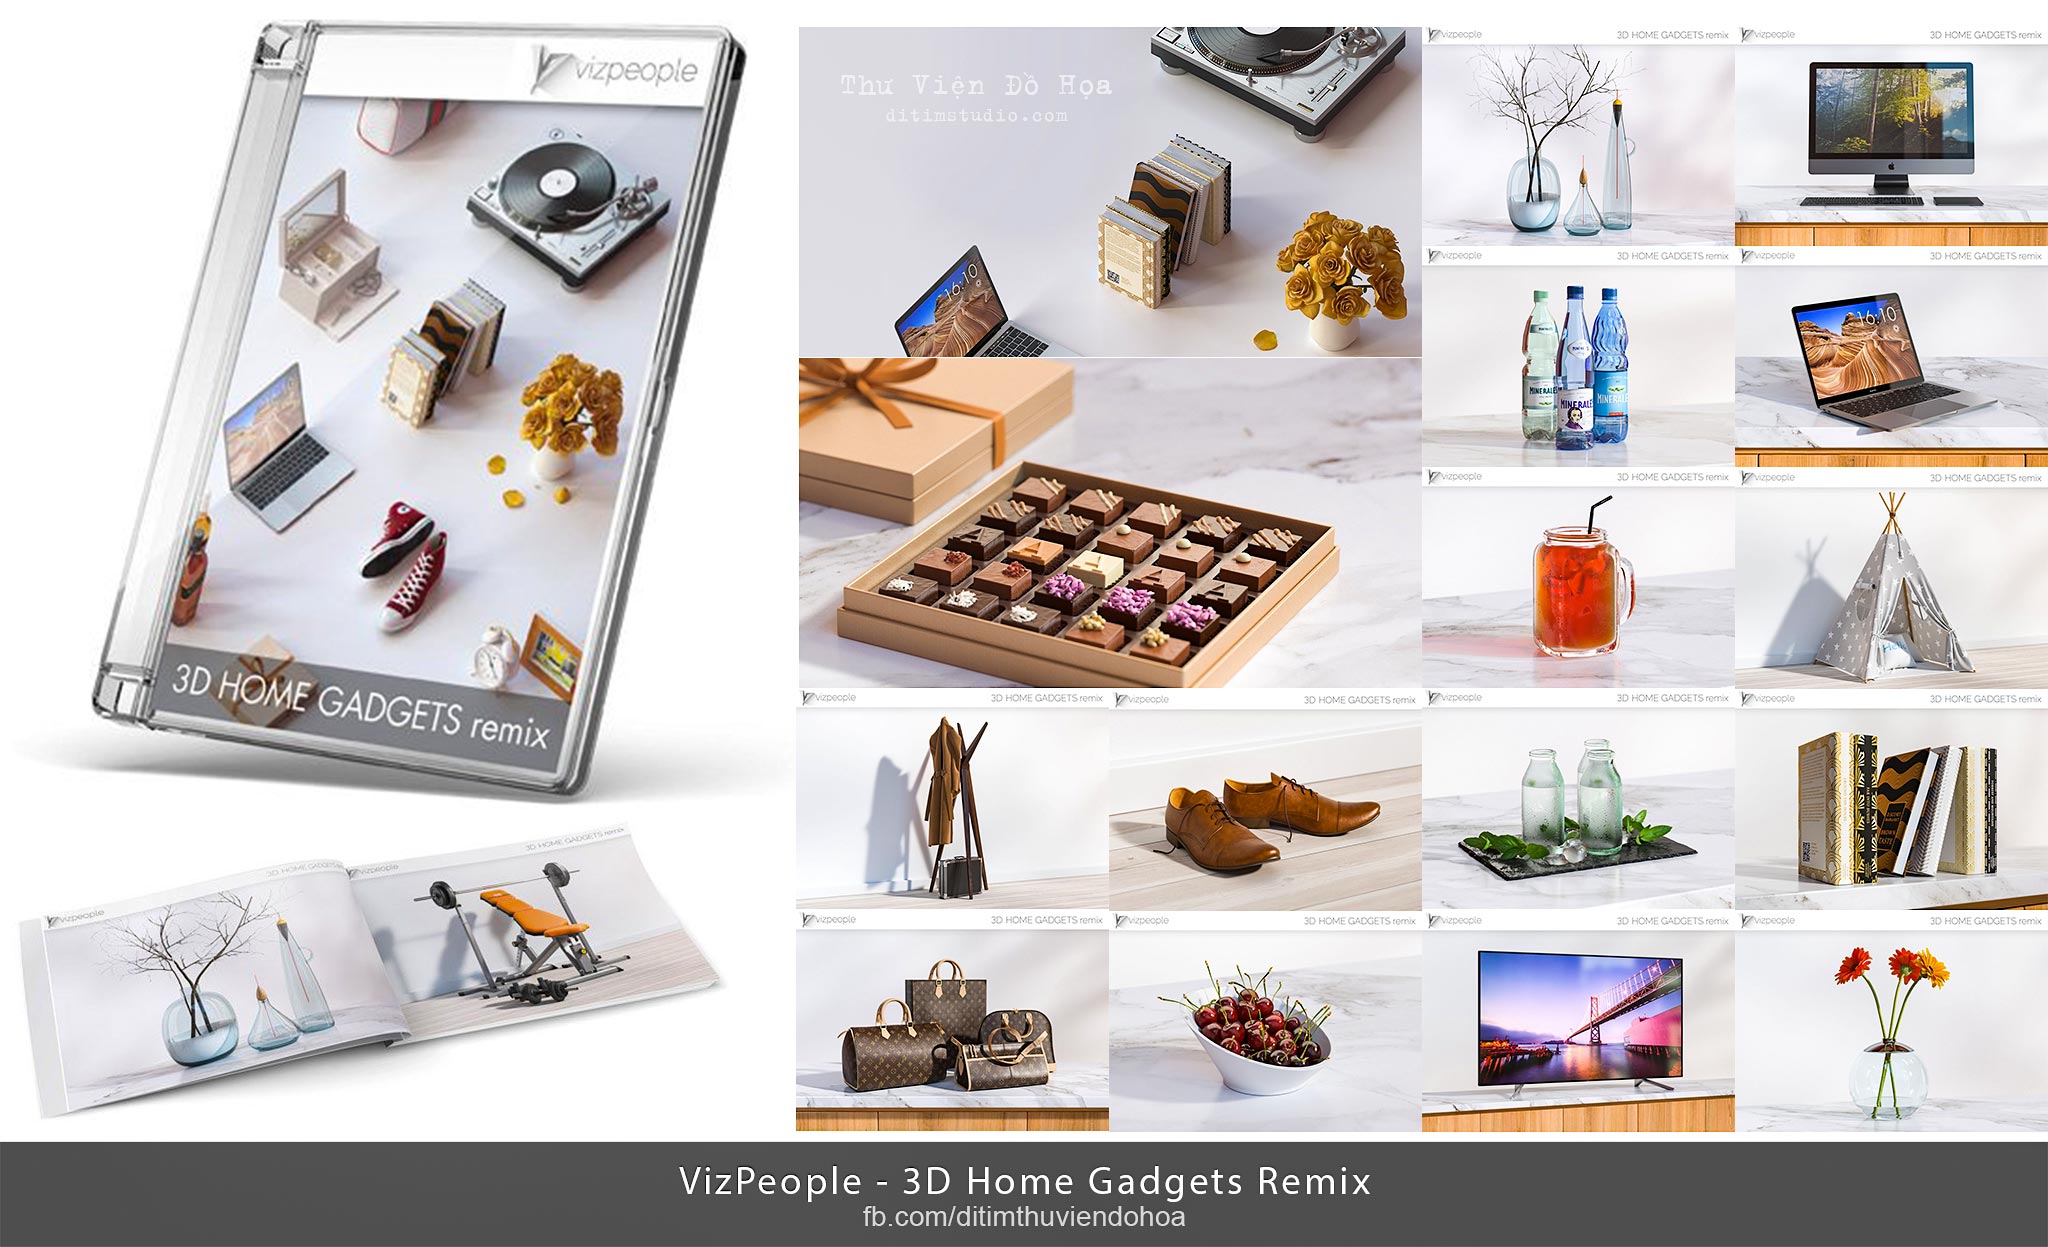 VizPeople - 3D Home Gadgets Remix